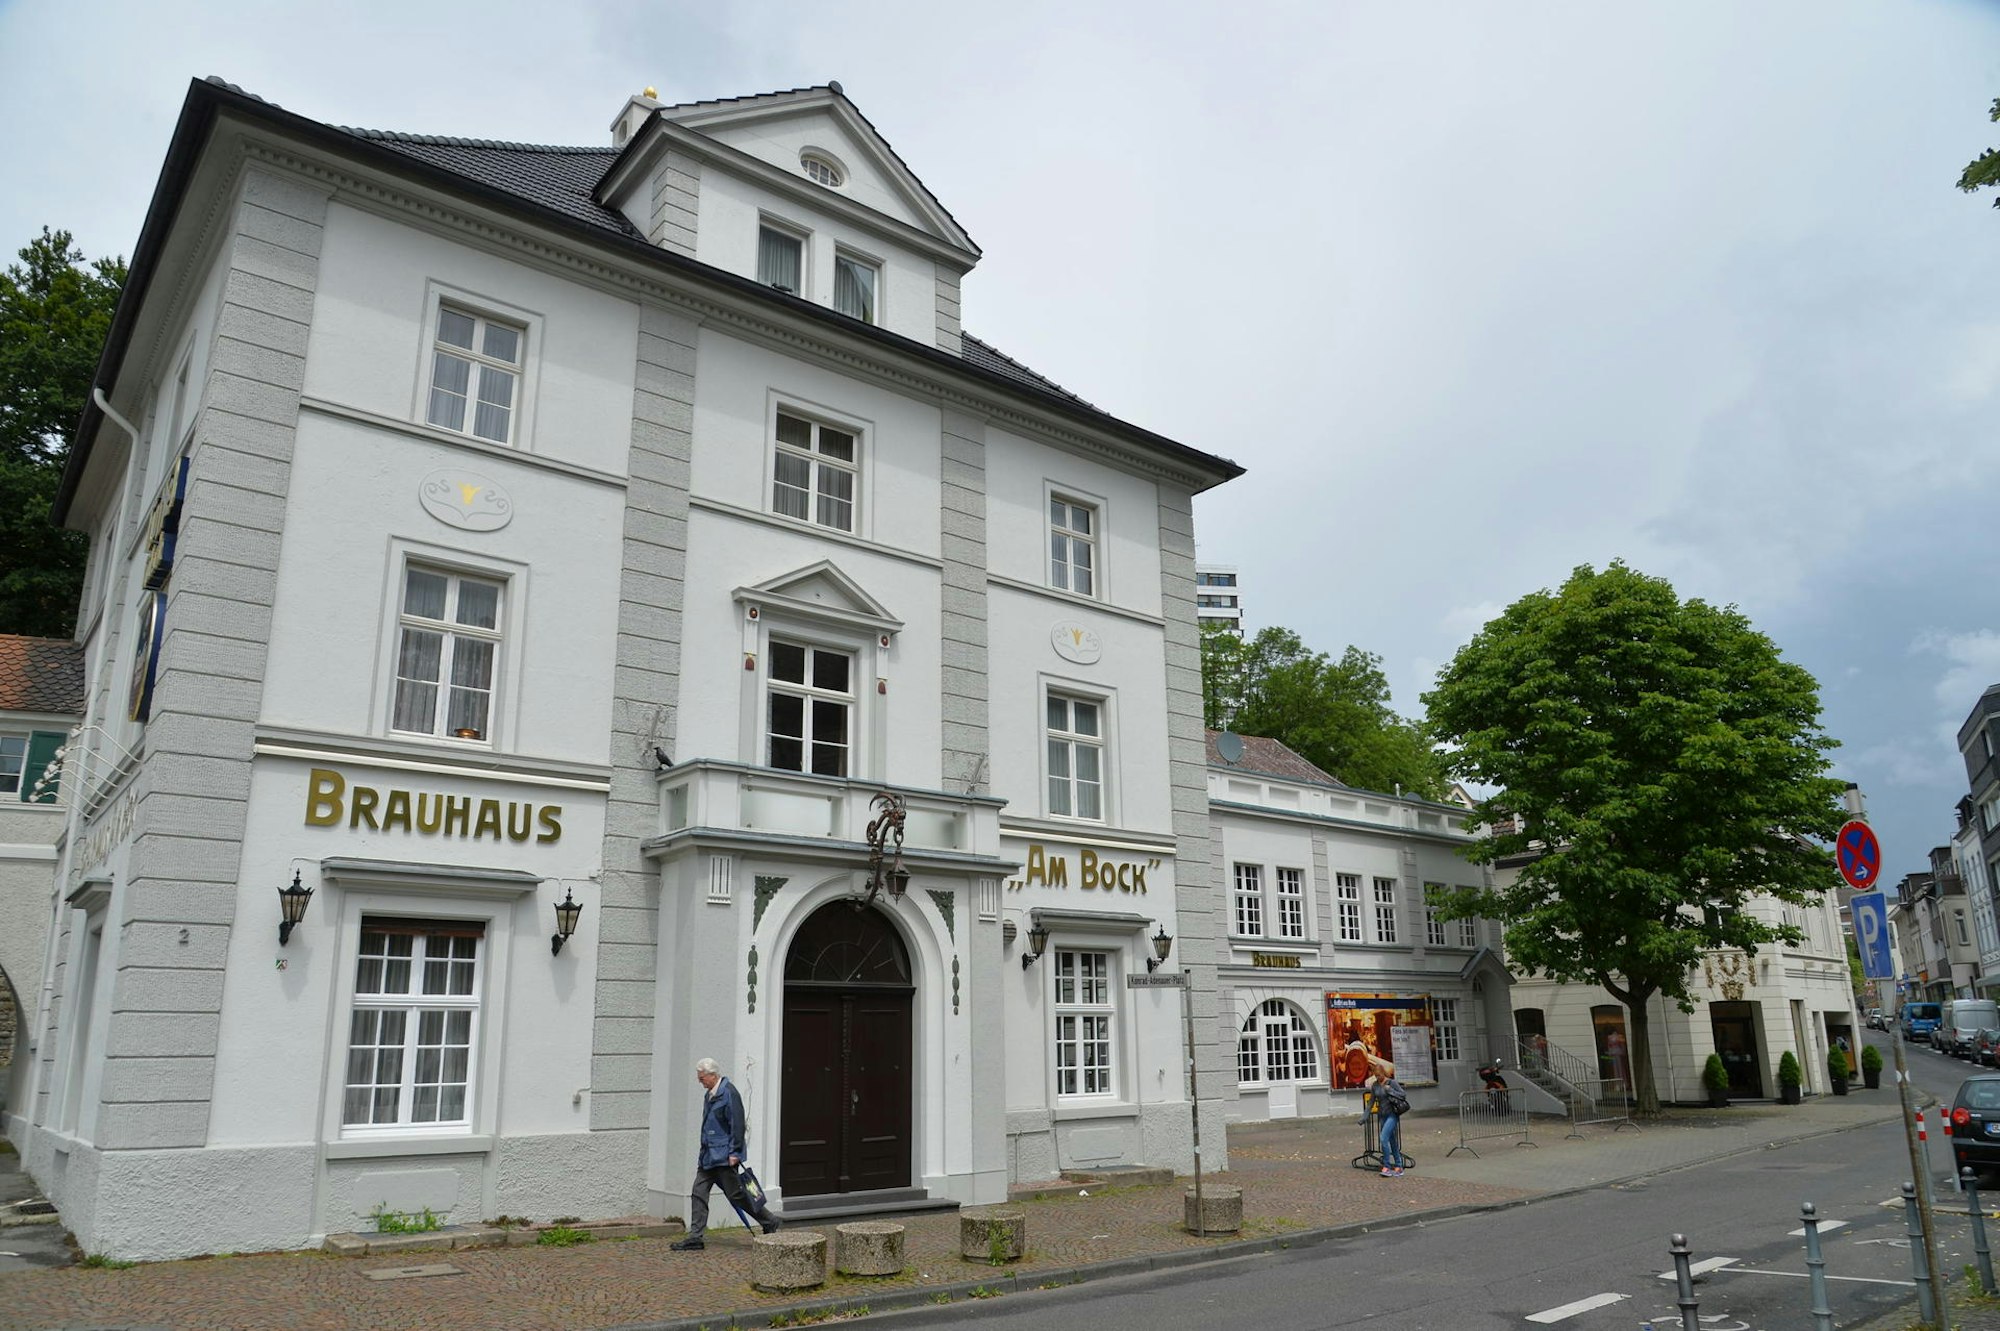 Brauhaus Am Bock